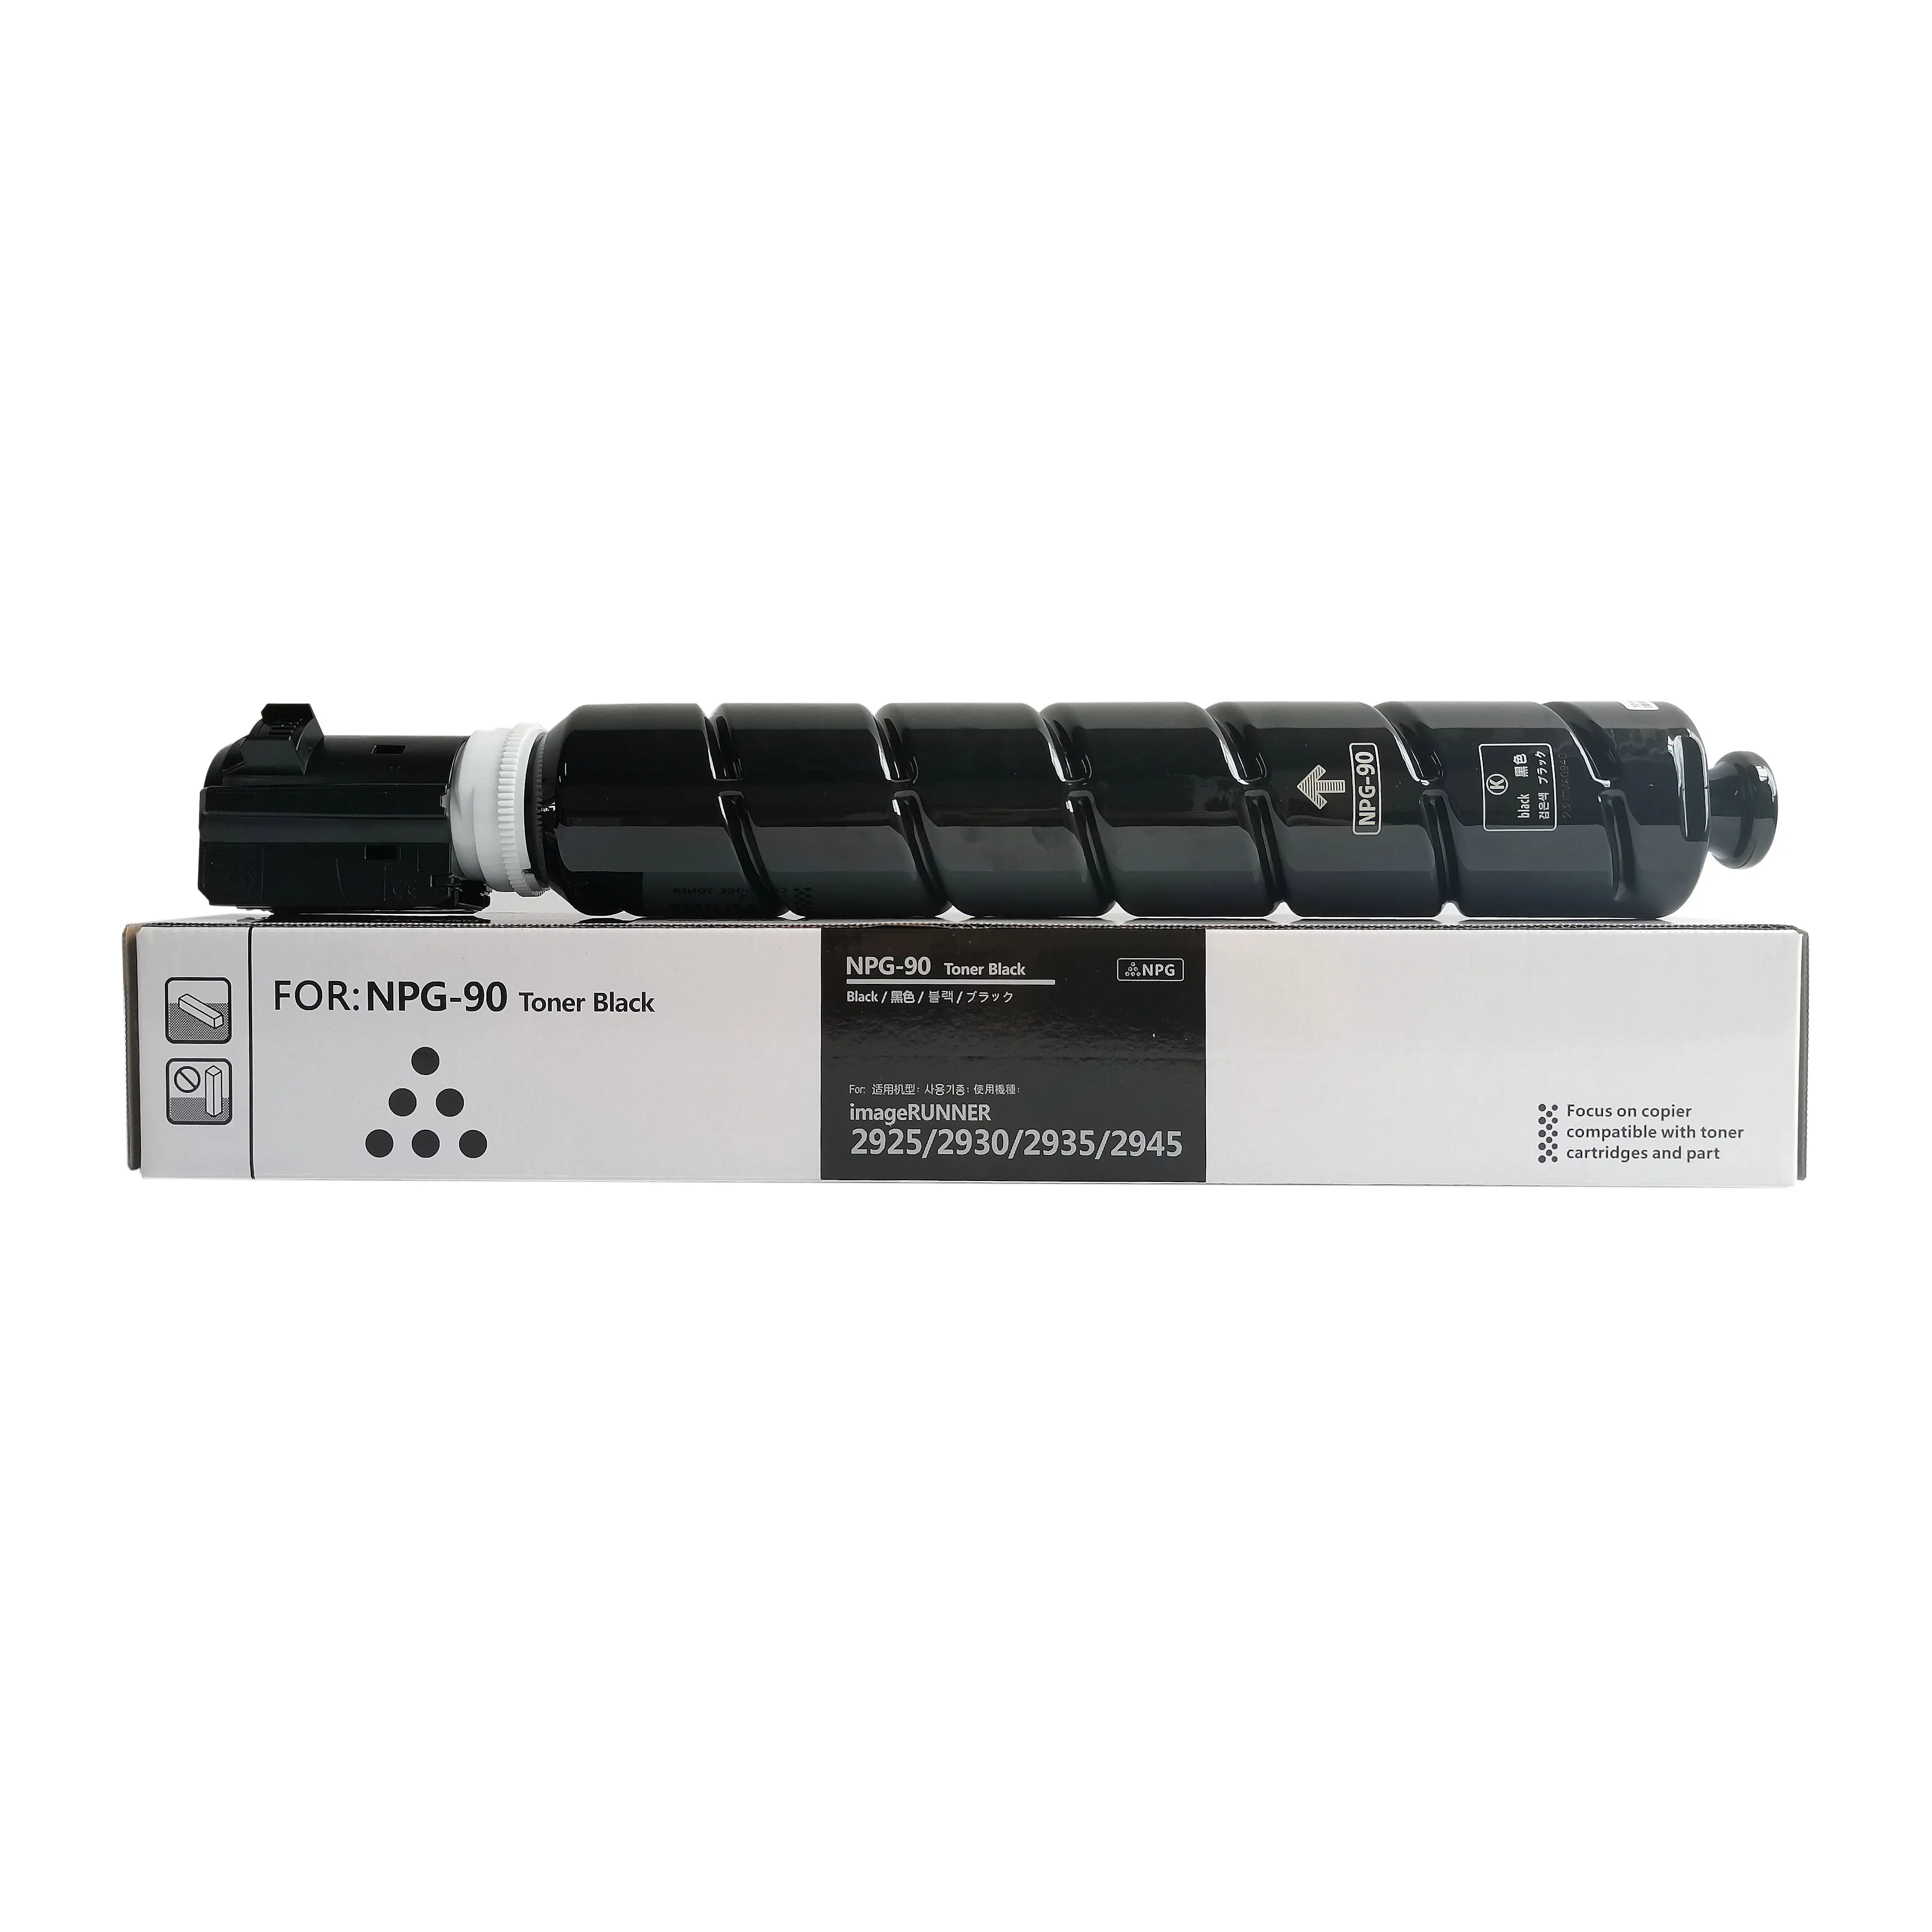 Penjualan langsung pabrik kelas tinggi NPG90 untuk IR 2925 2930 2935 2945 kartrid Toner Laserjet hitam kompatibel